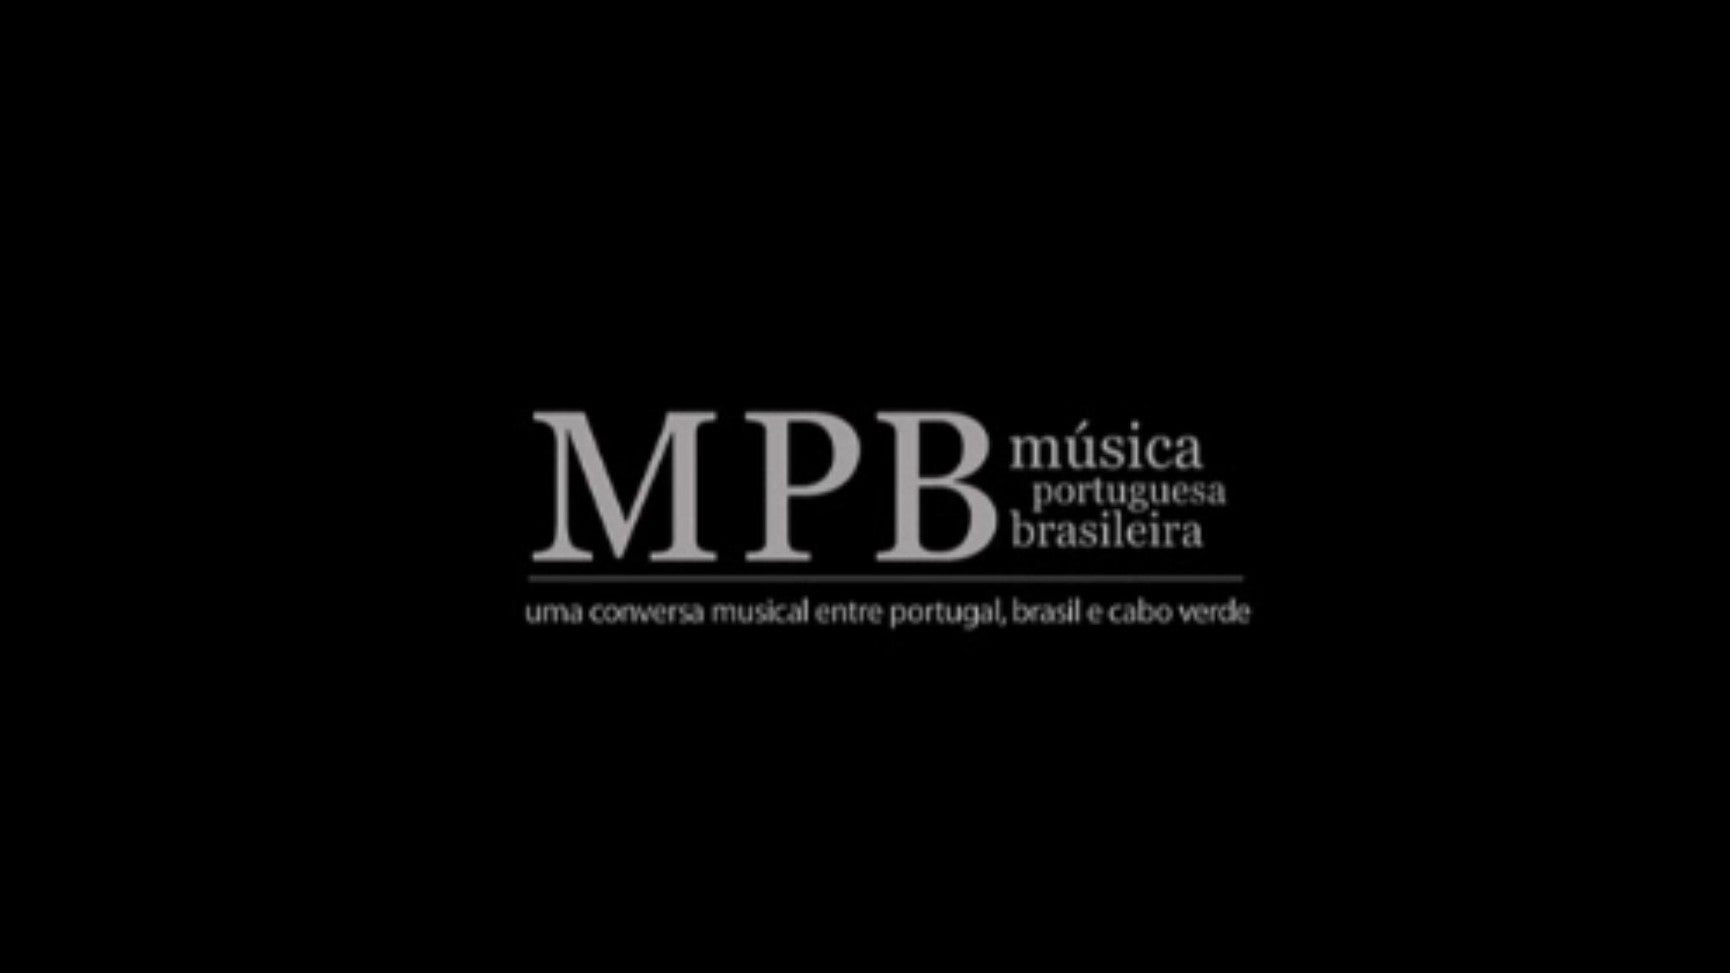 MPB - Msica Portuguesa Brasileira